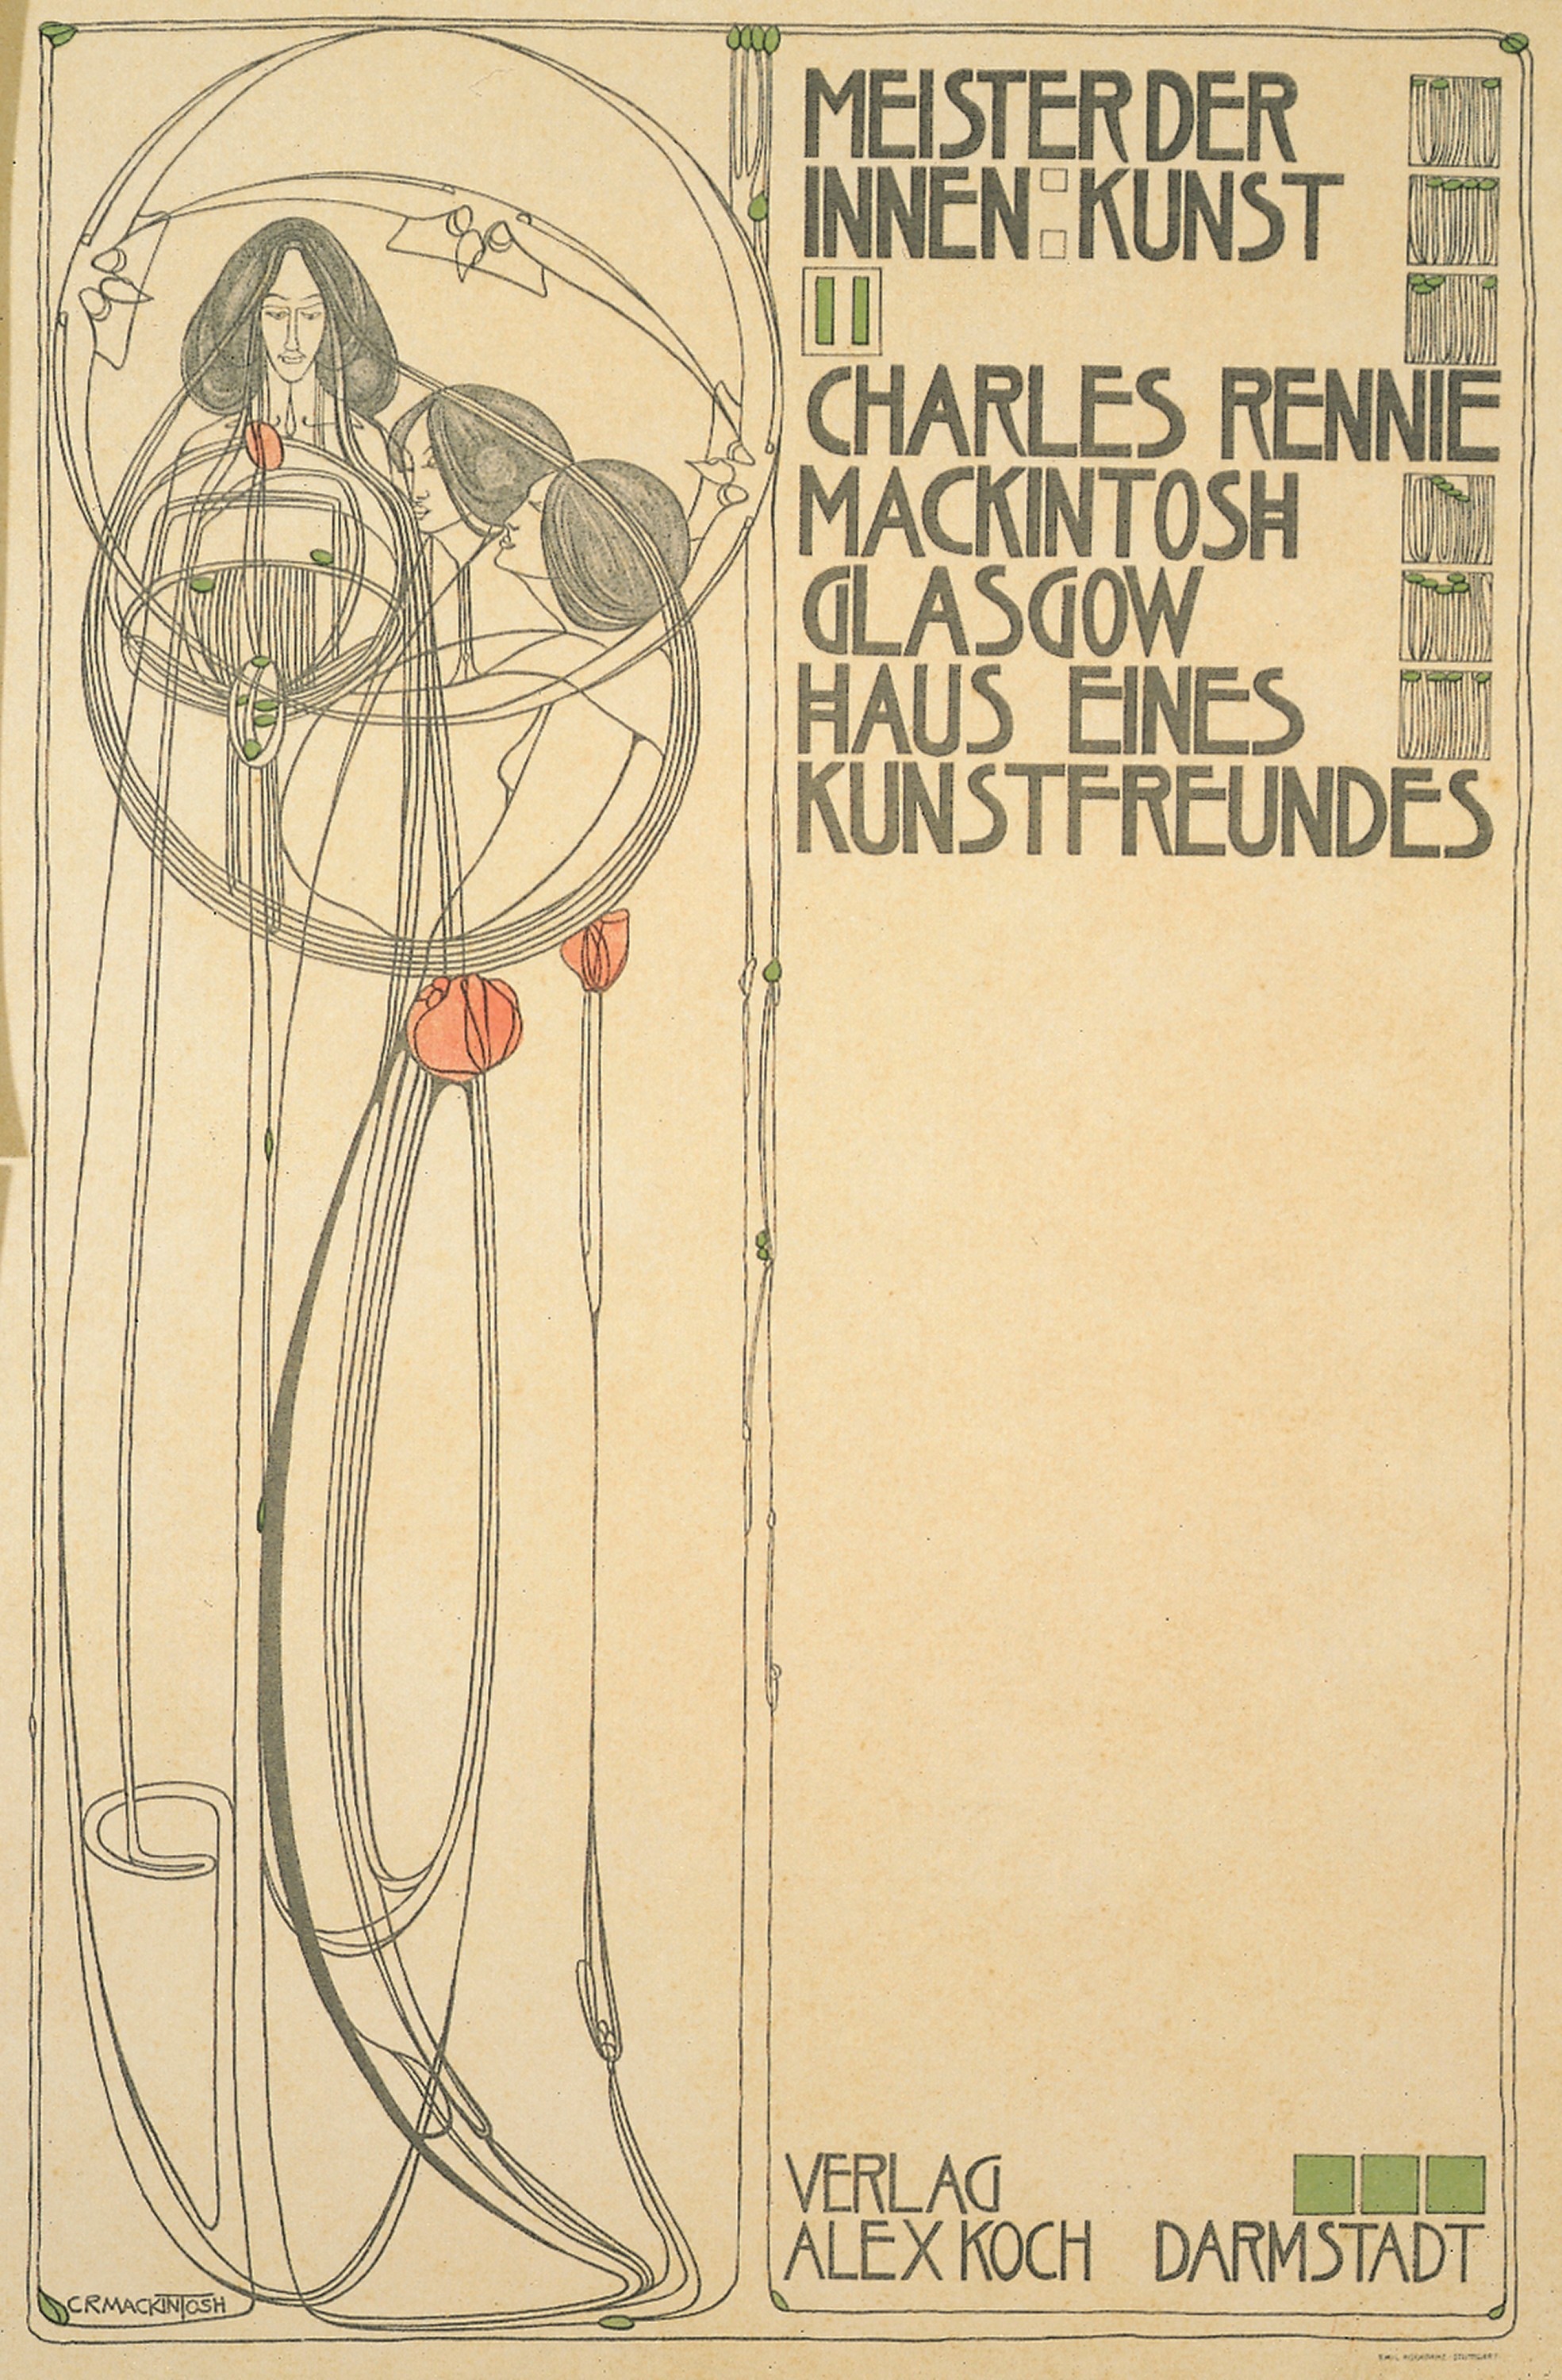 Title page, Charles Rennie Mackintosh, Glasgow: Haus Eines Kunstfreundes (Meister der Innenkunst II), 1902